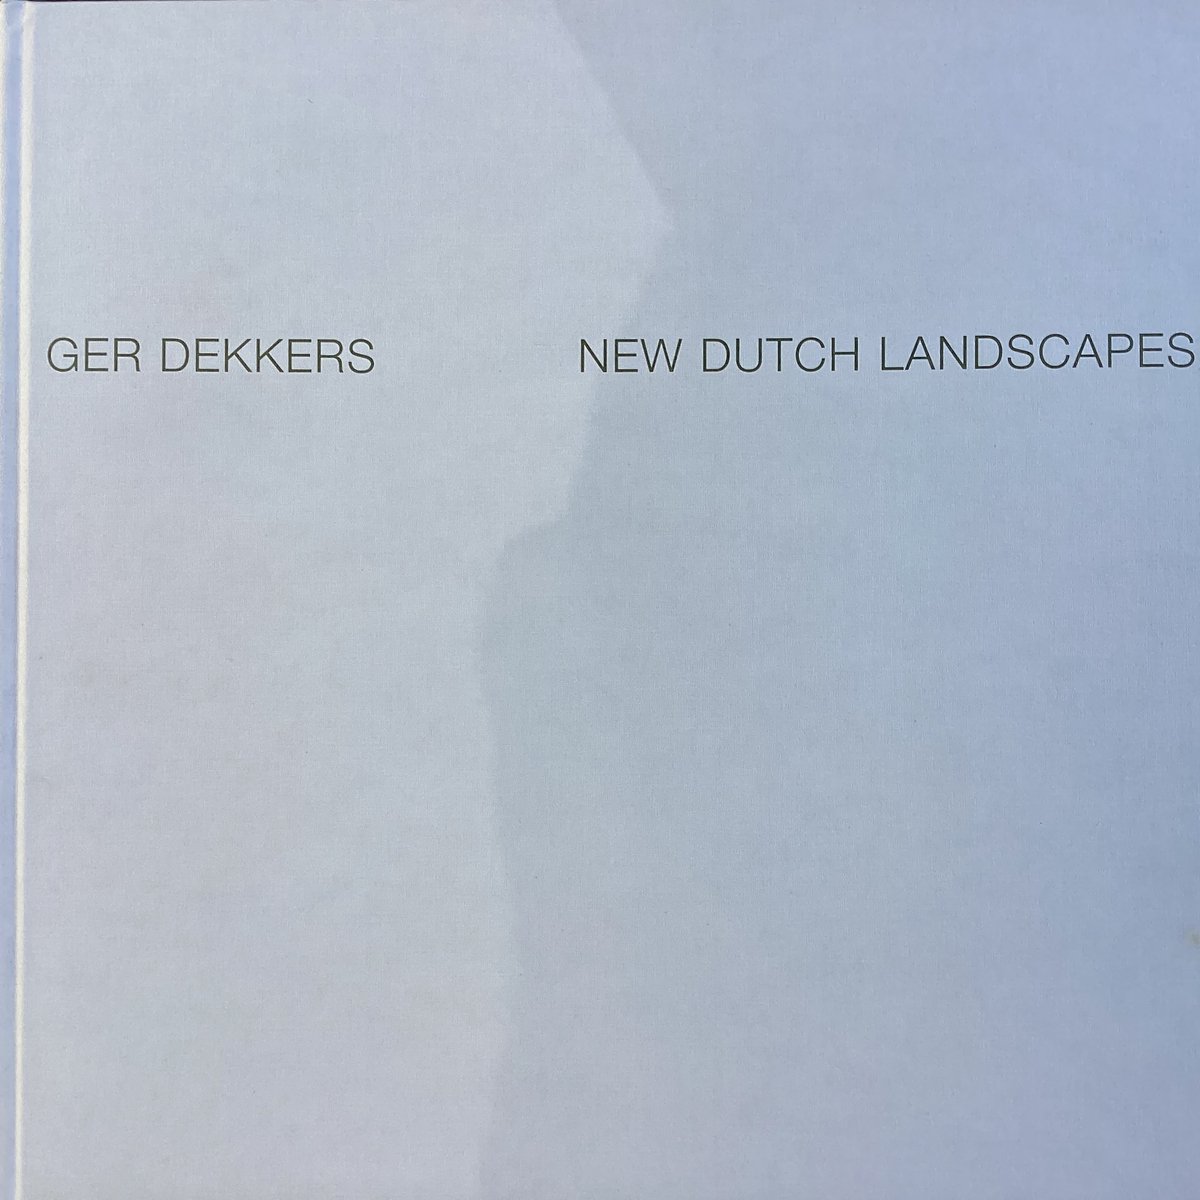 New Dutch landscapes